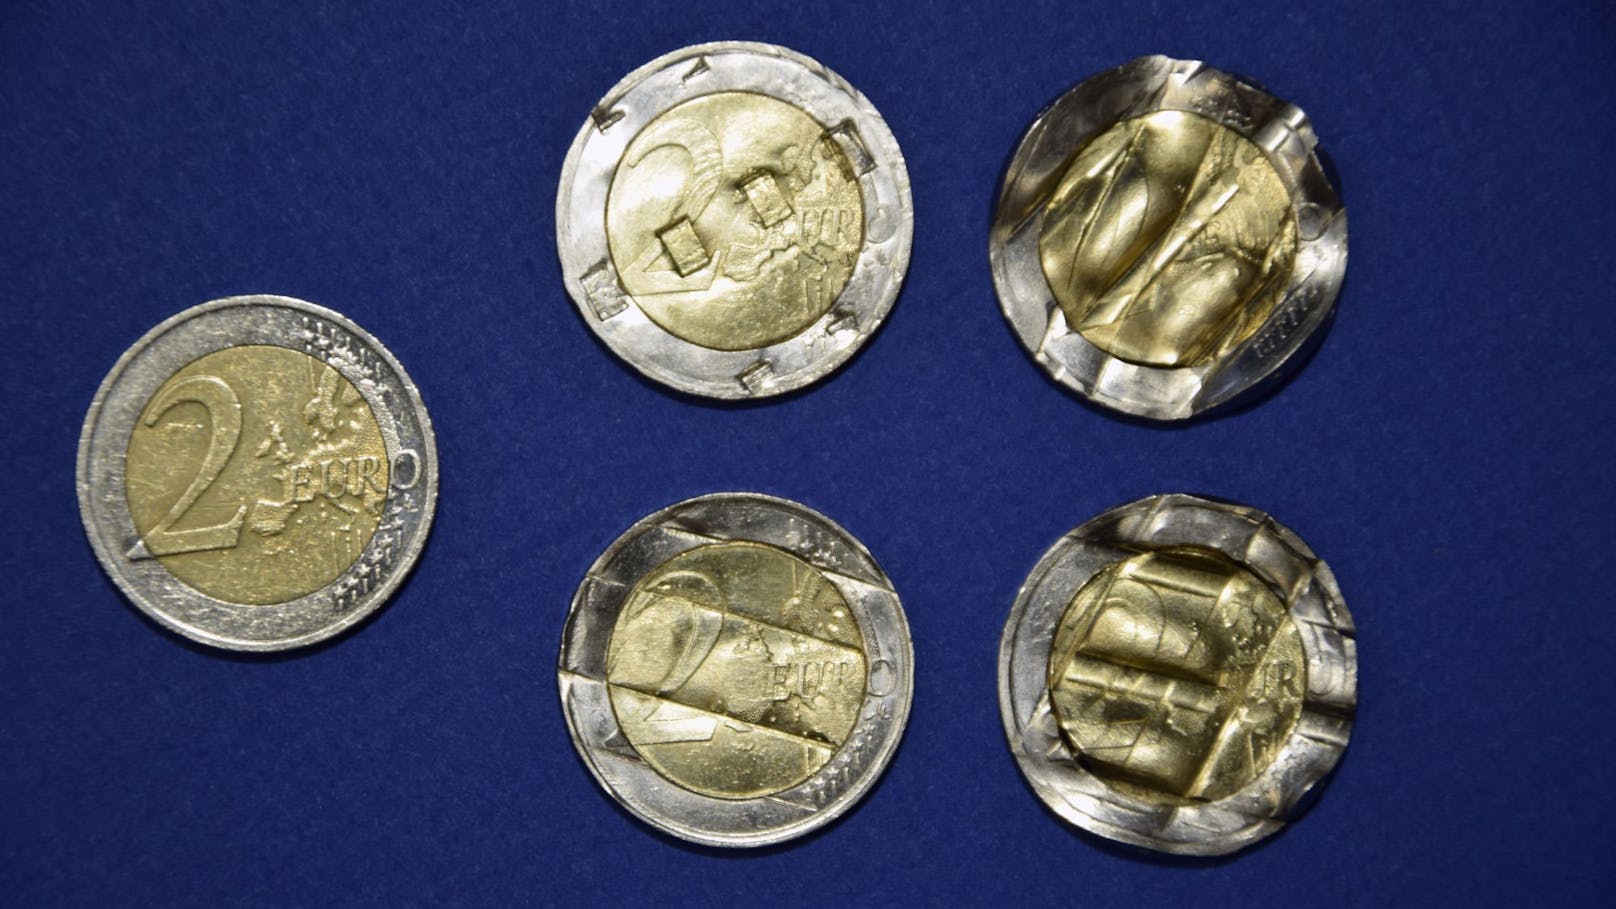 Die Münzen wurden ursprünglich entwertet, anschließend rechtswidrig wieder begradigt, um damit Verkaufsautomaten zu täuschen.